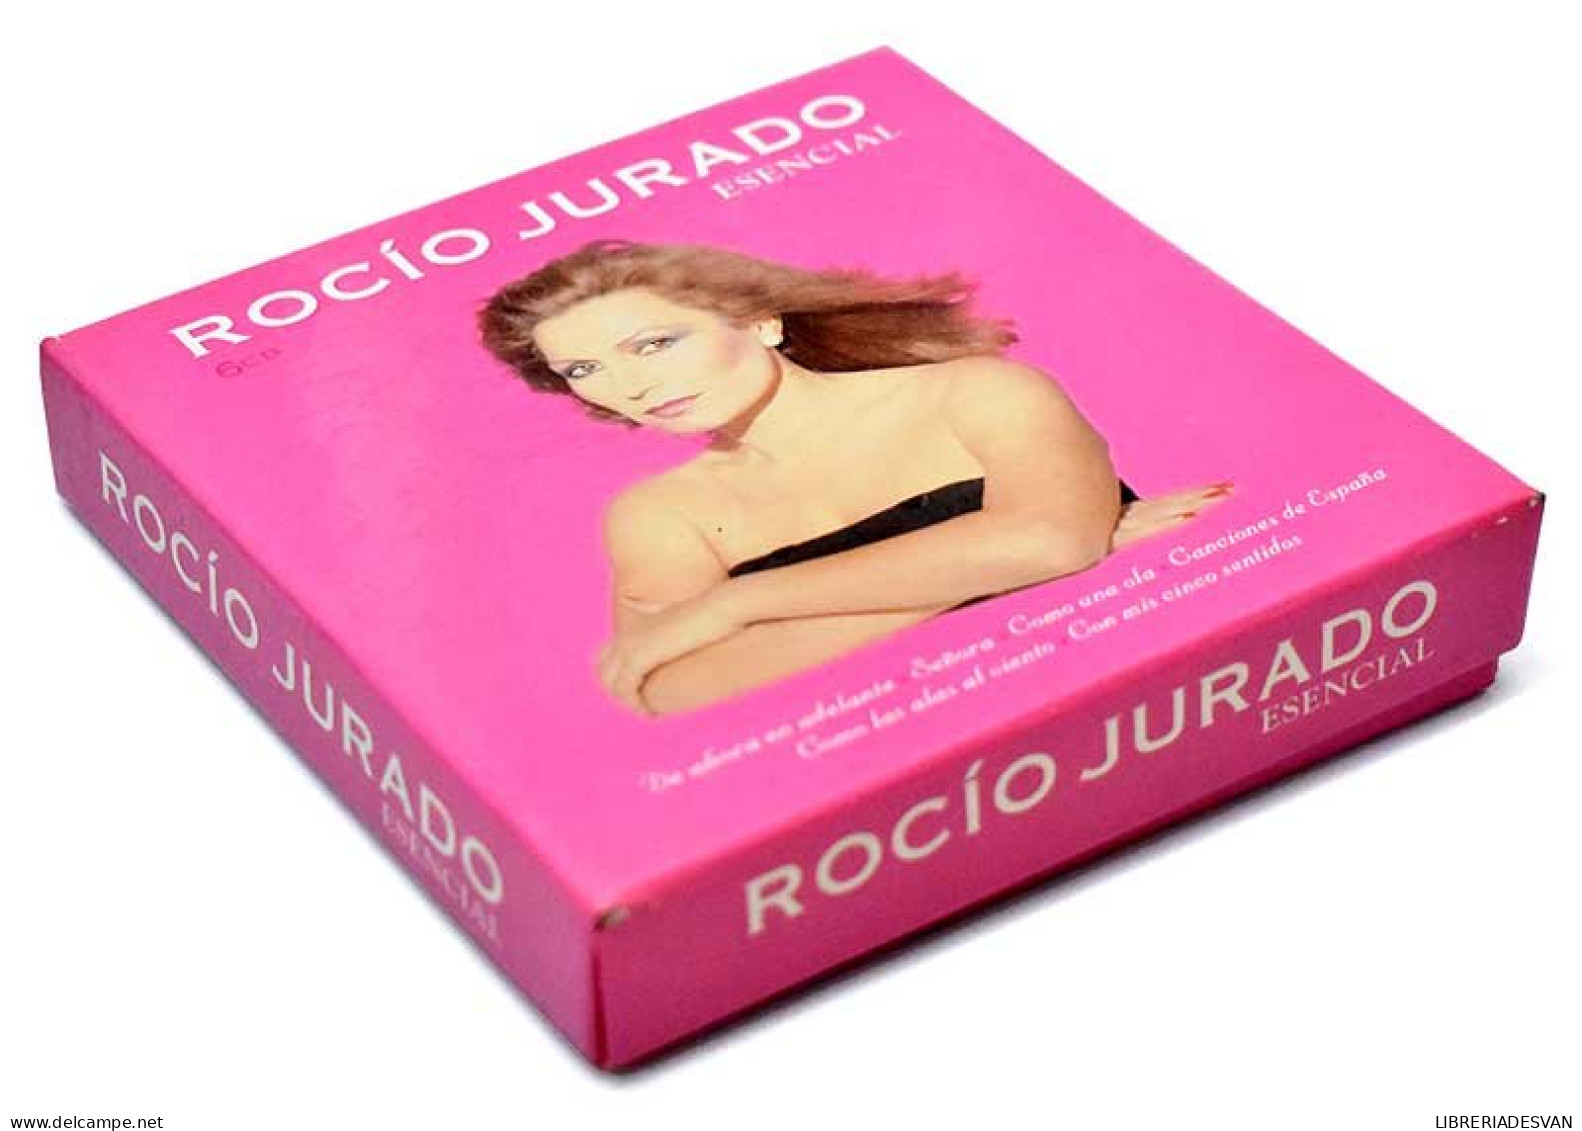 Rocio Jurado - Esencial. 6 X CD - Other - Spanish Music